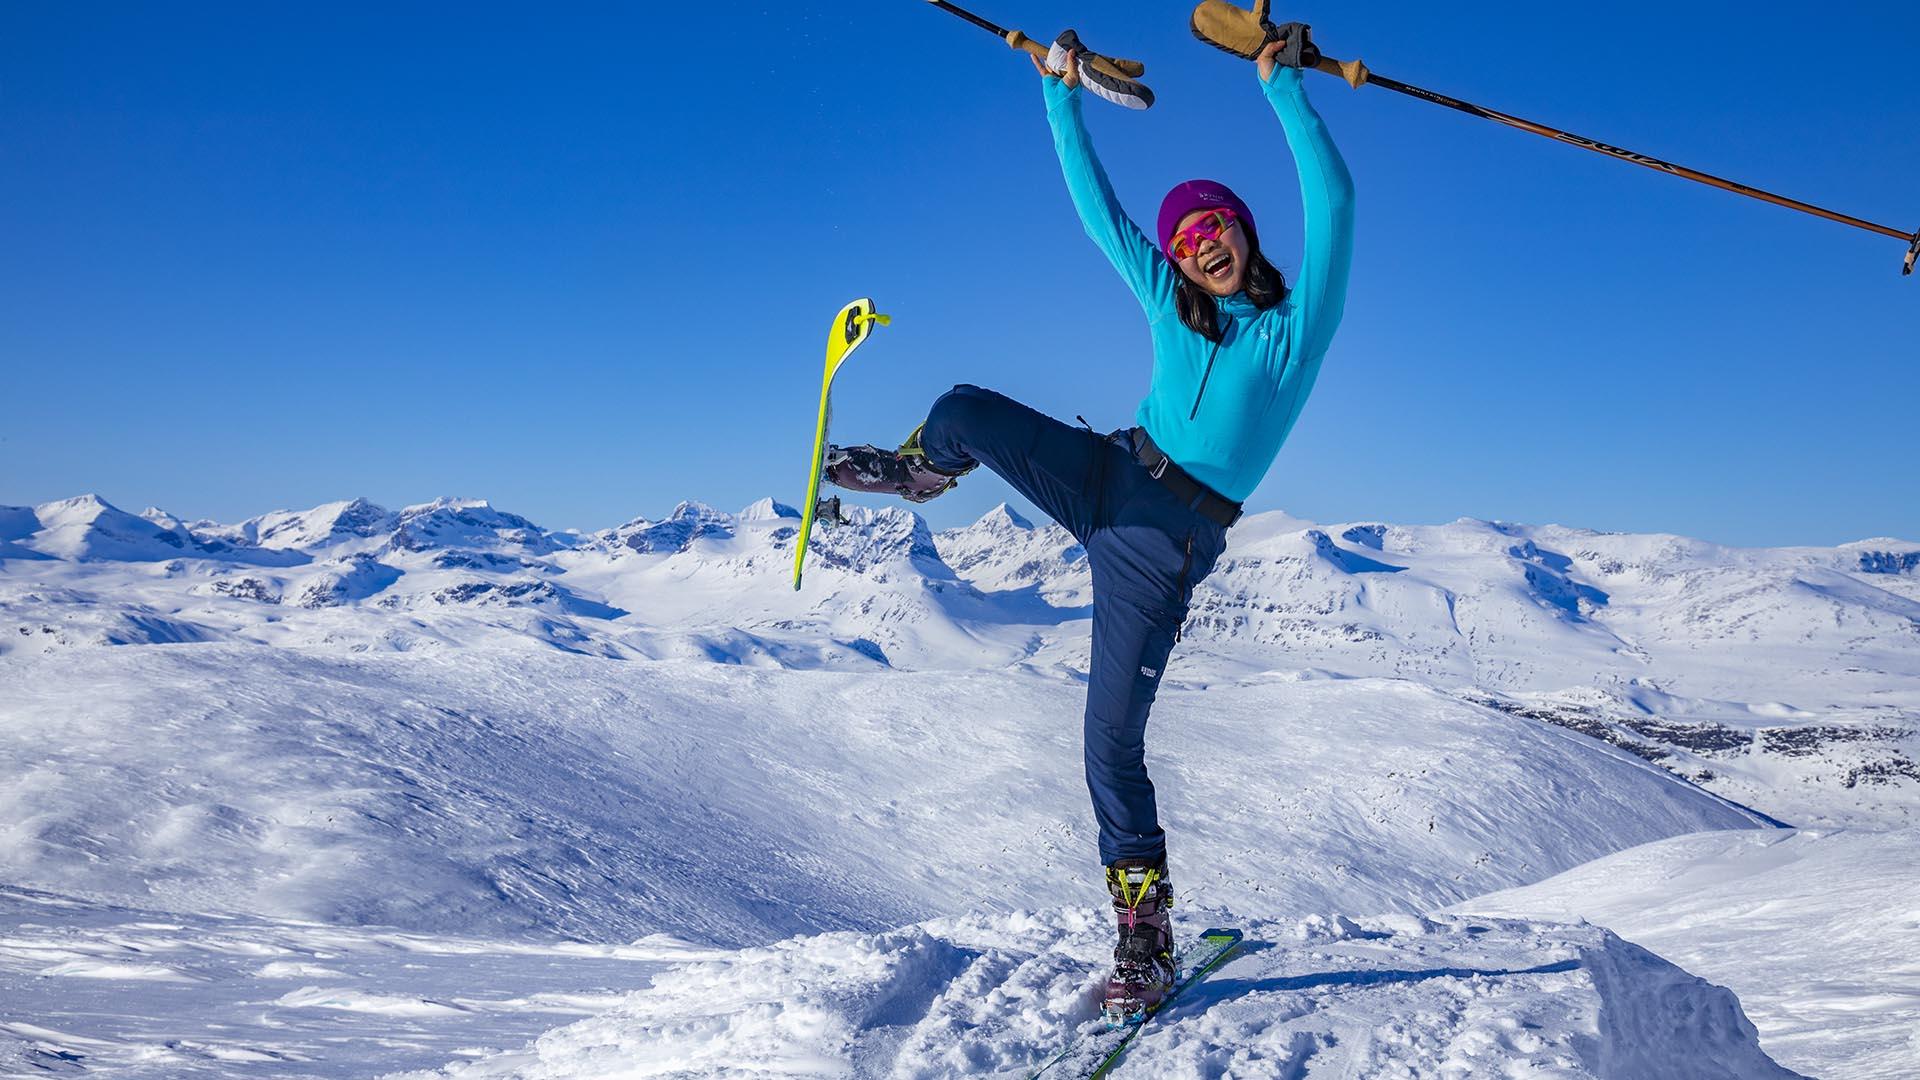 Jente på fjelltopp med randoski, superglad og strekker hender og den ene foten med skien i været. Langstrakt utsikt over snøkledde fjell bak.